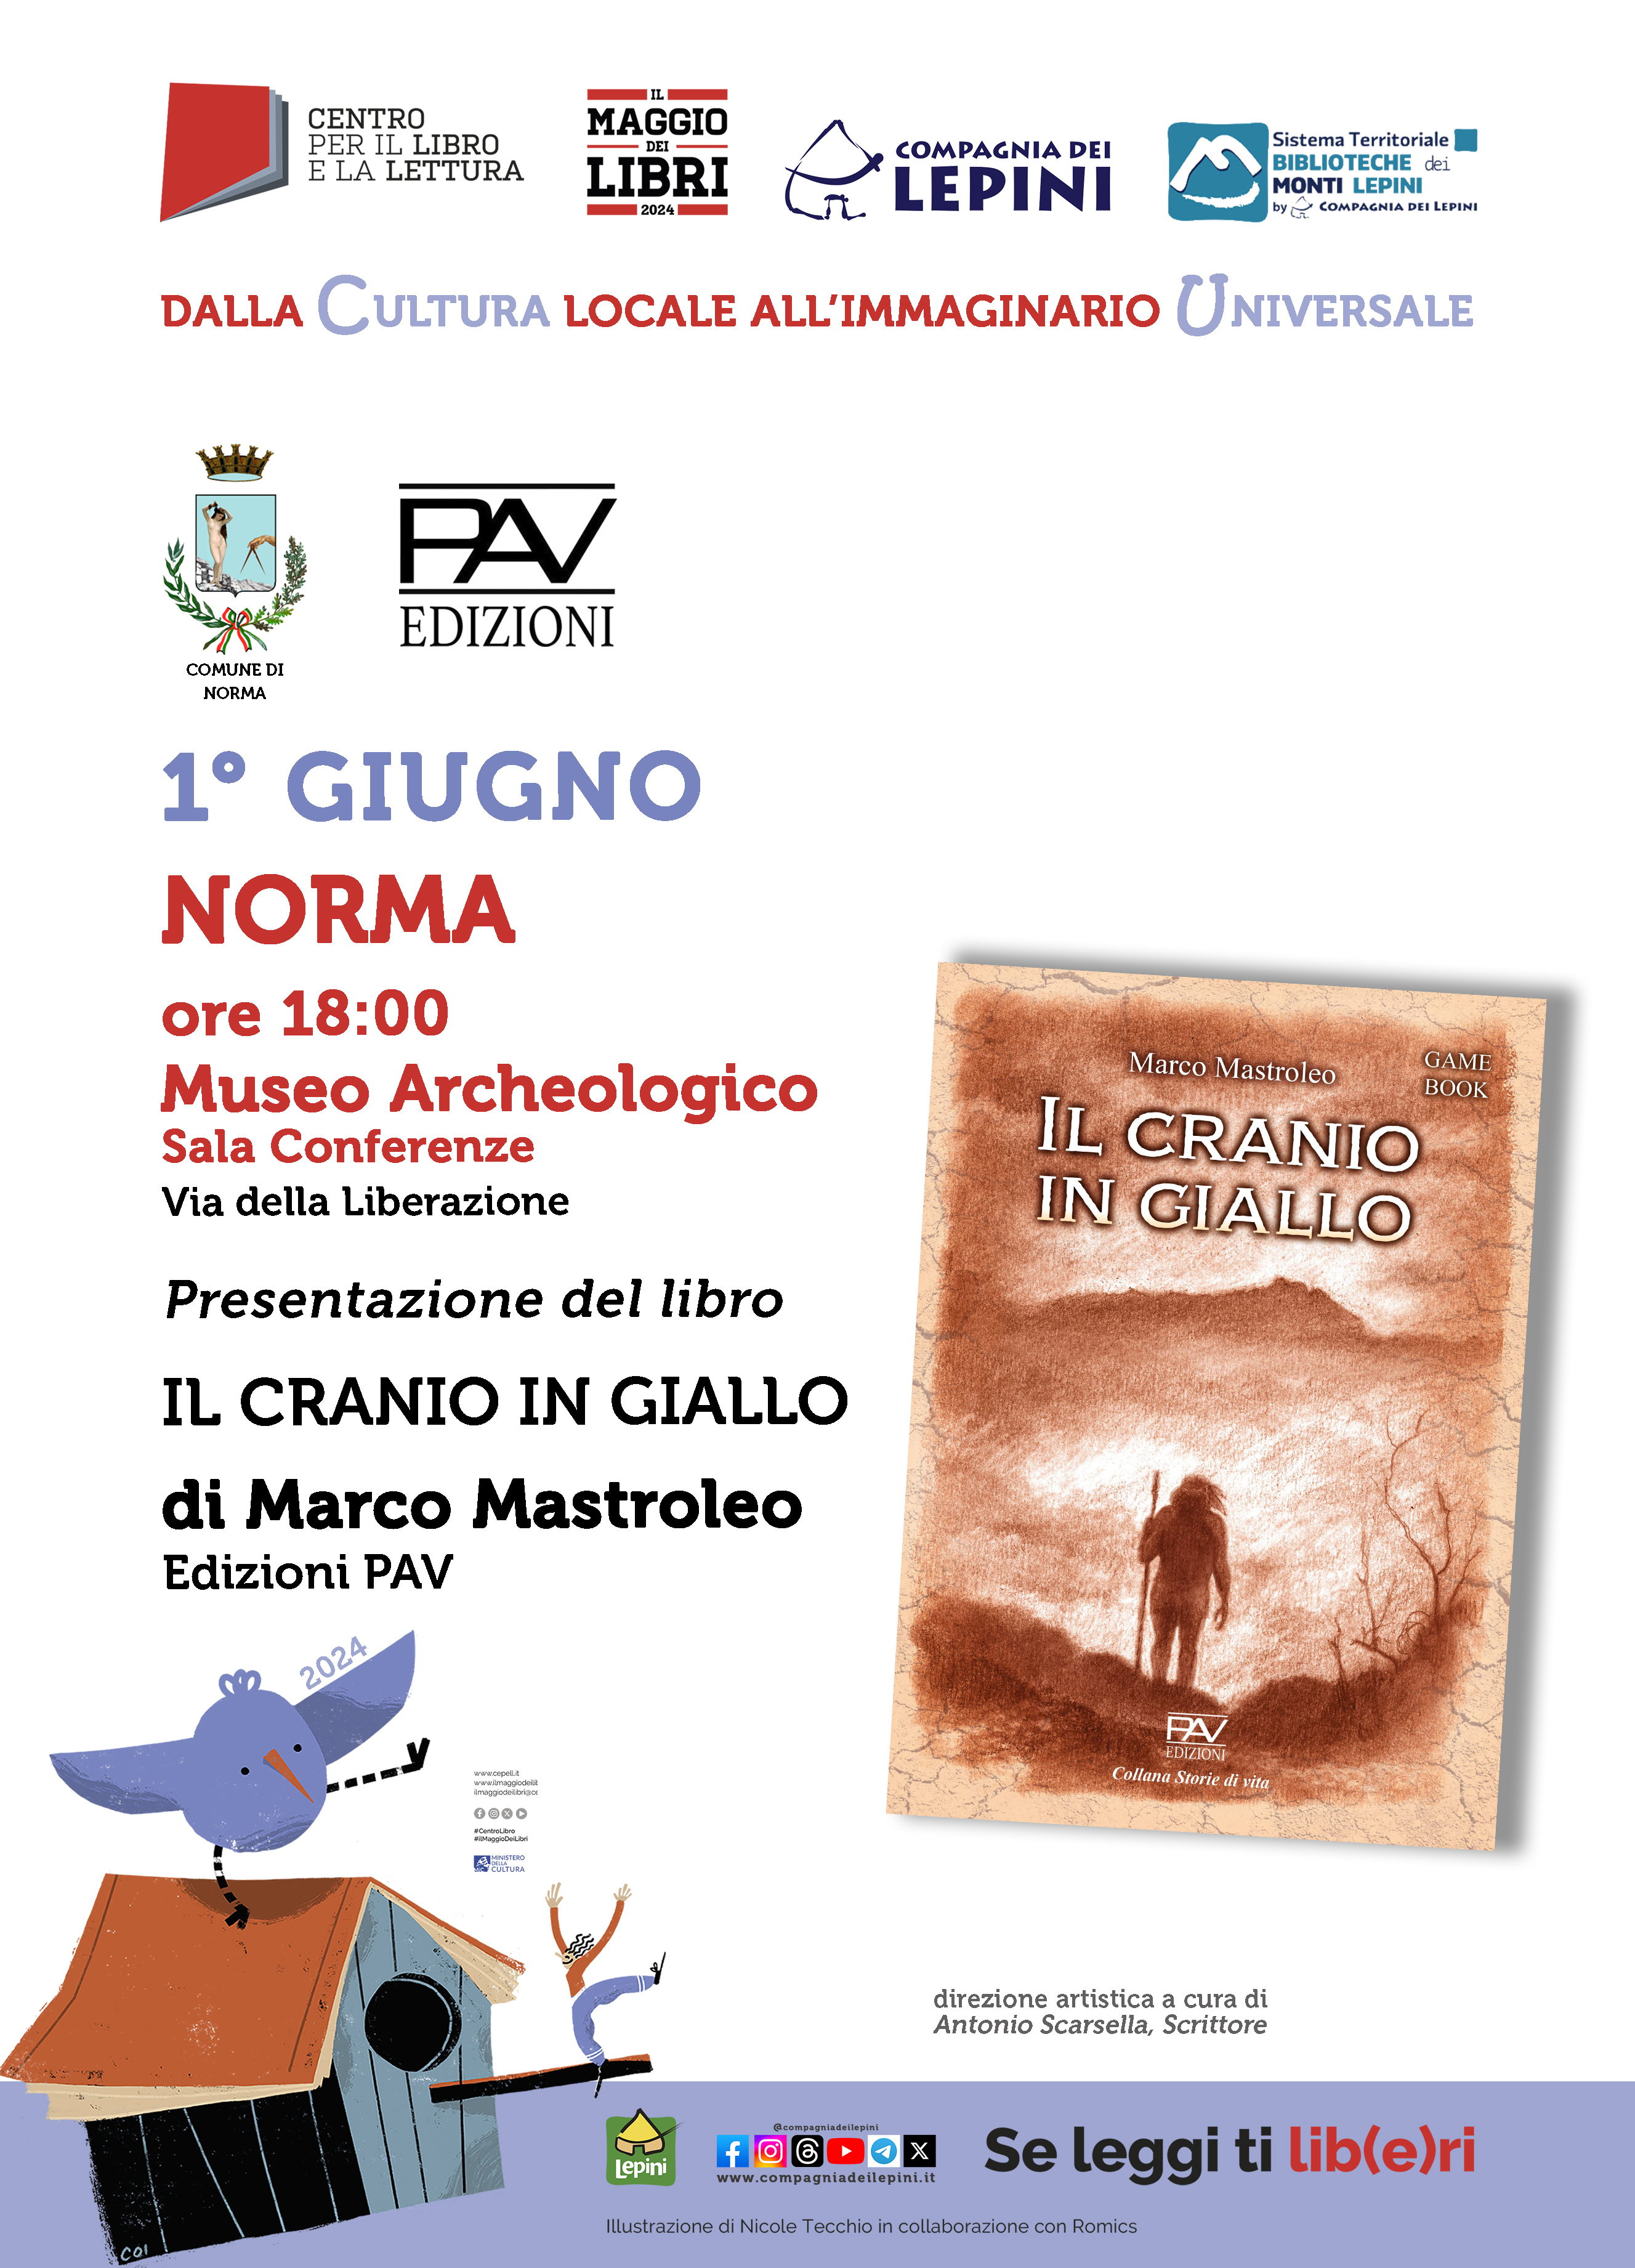 Il Maggio dei Libri a Norma: Presentazione del libro "Il Cranio Giallo" di Marco Mastroleo @ Museo Archeologico - Sala Conferenze